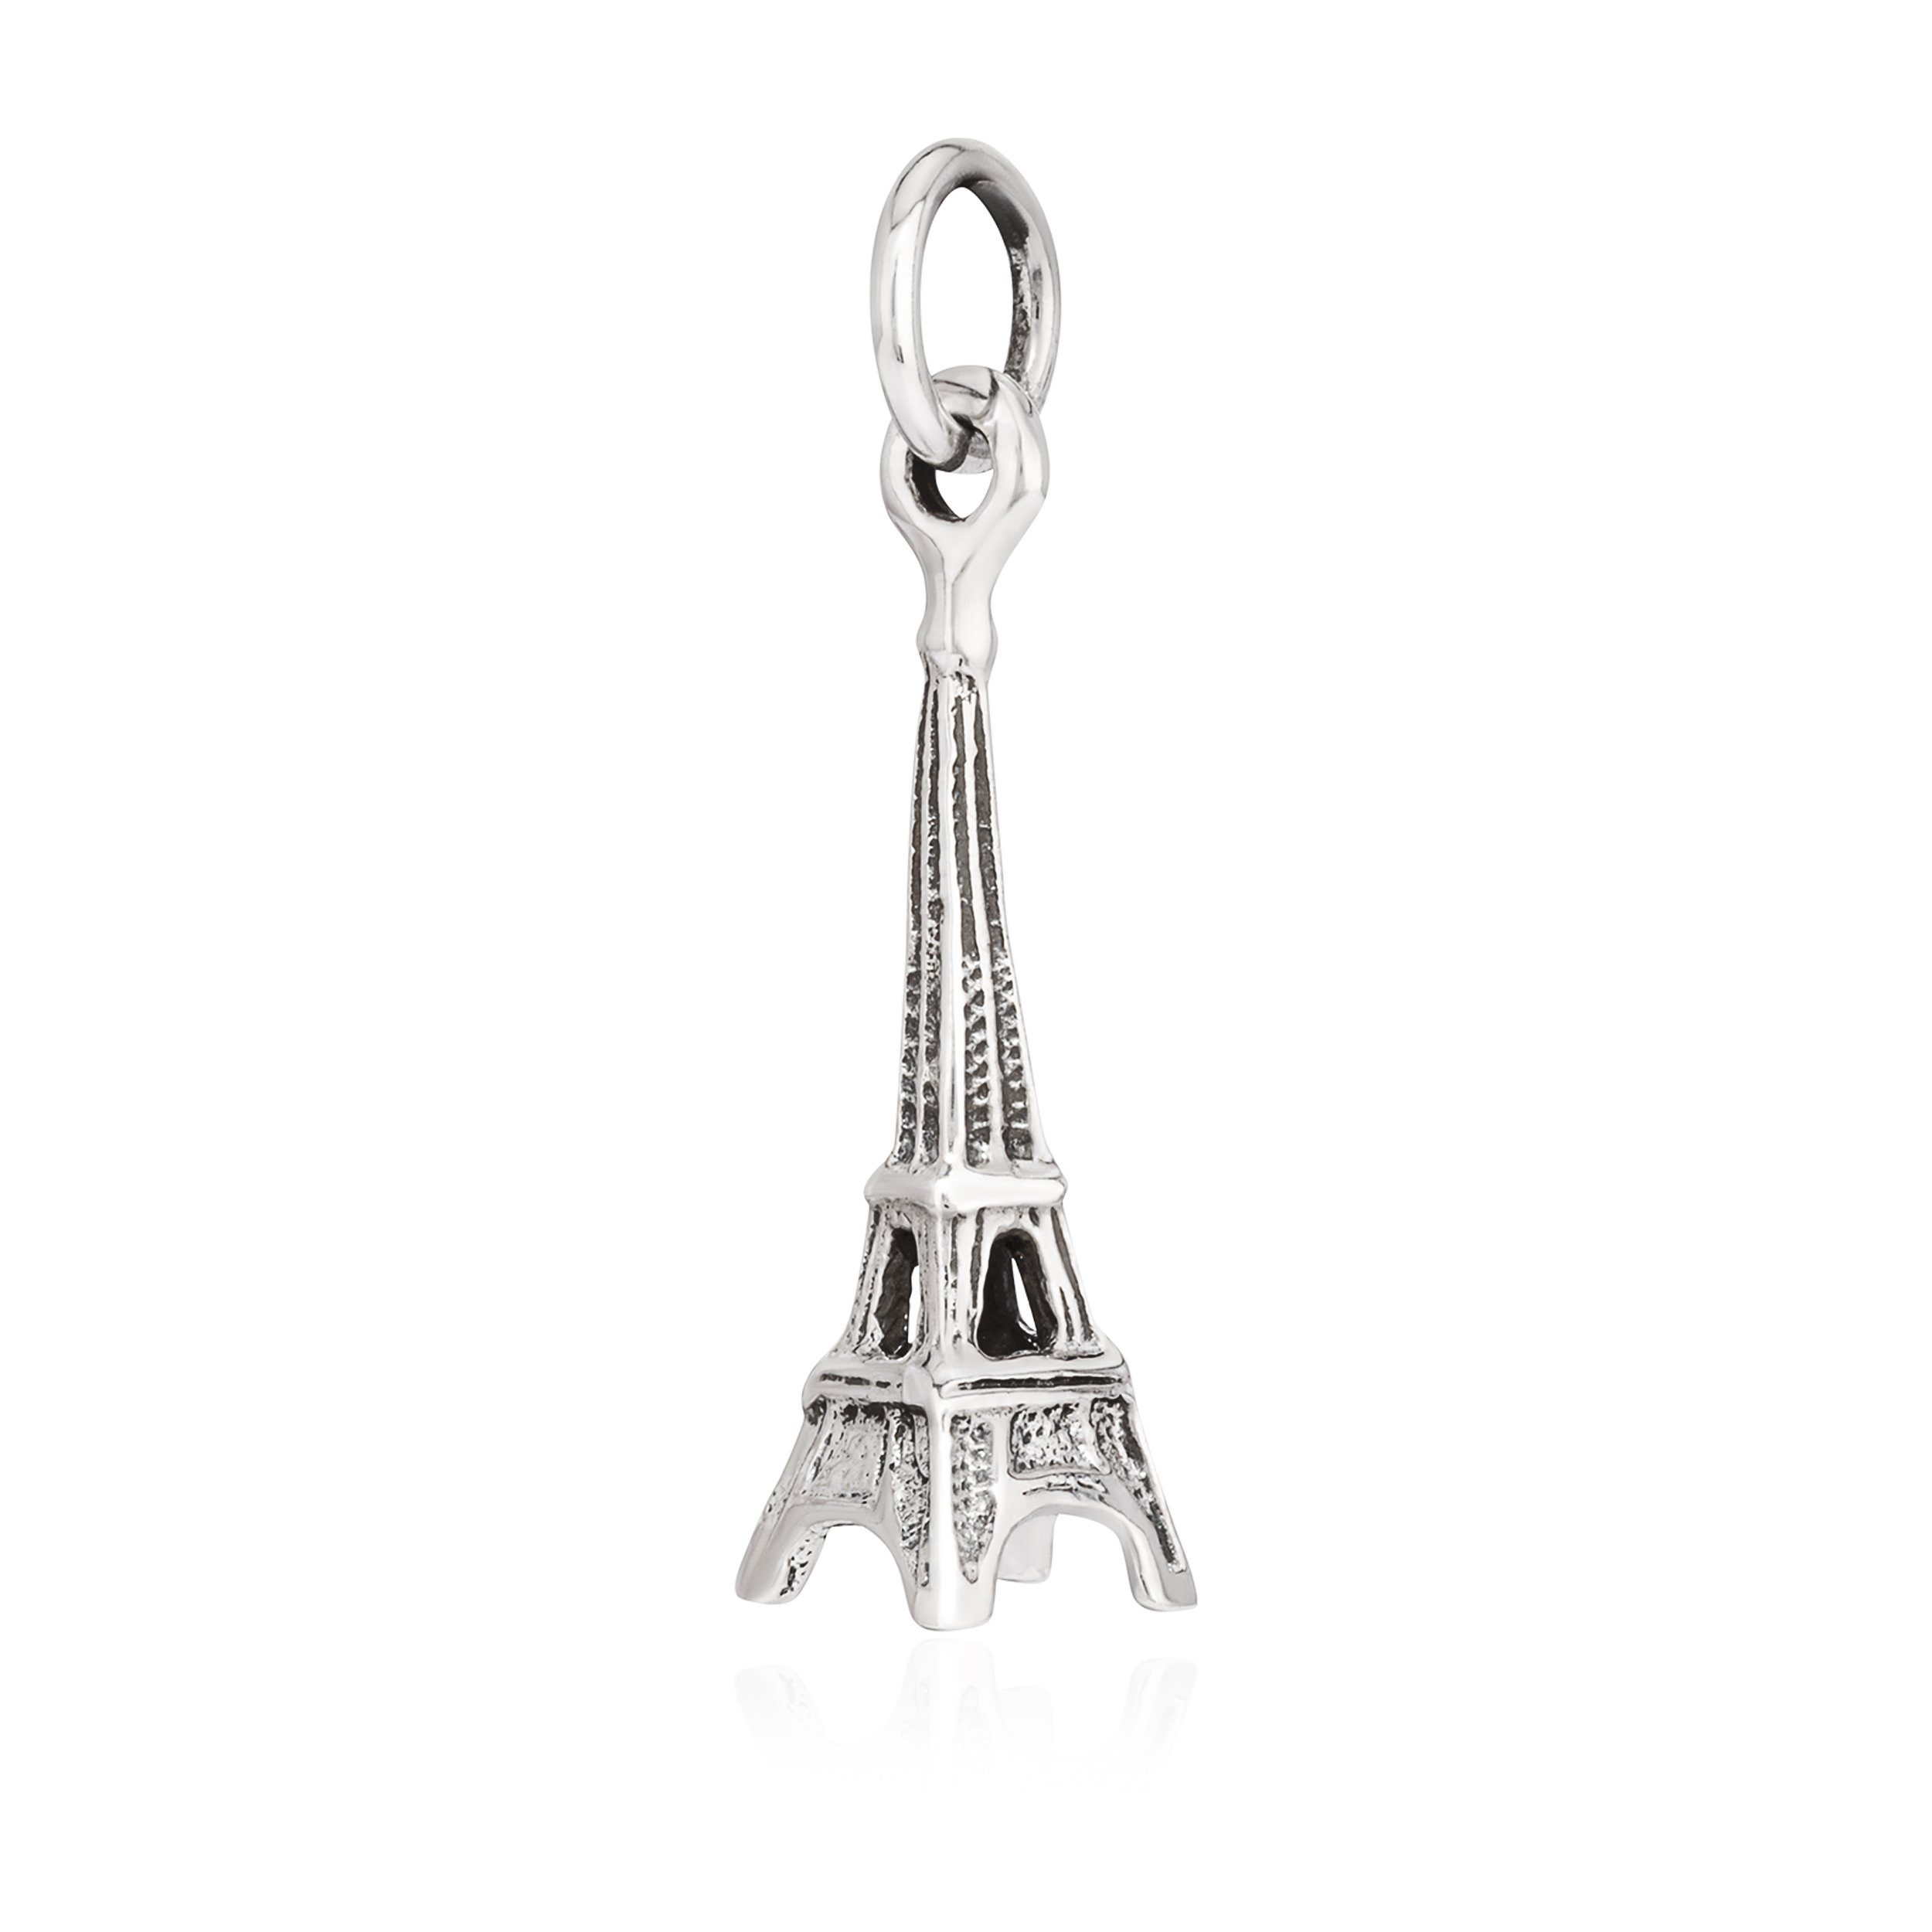 NKlaus Kettenanhänger Kettenanhänger Eiffelturm 925 925 Paris, Silber rhodiniert 21x7mm Silber